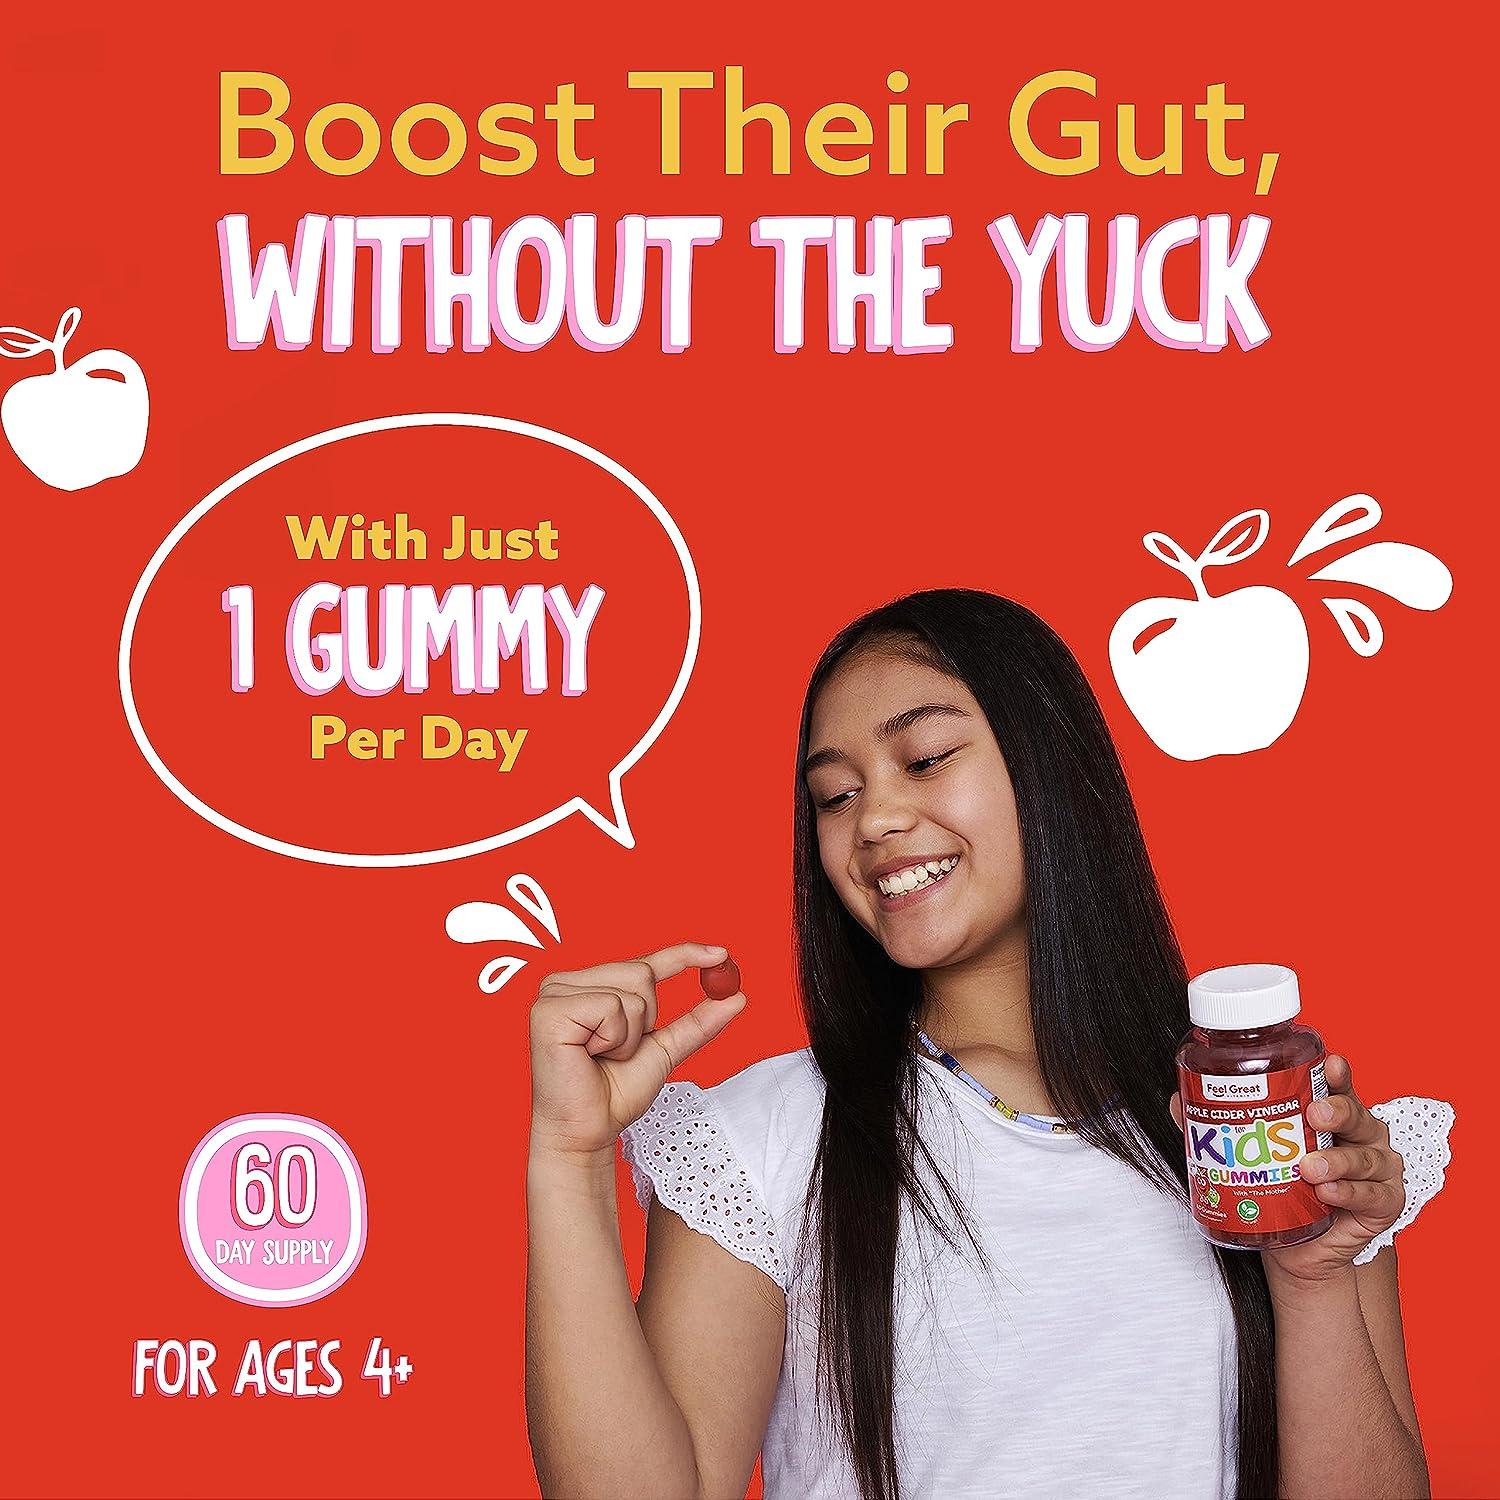 Apple Cider Vinegar Gummies for Kids – Feel Great 365, LLC